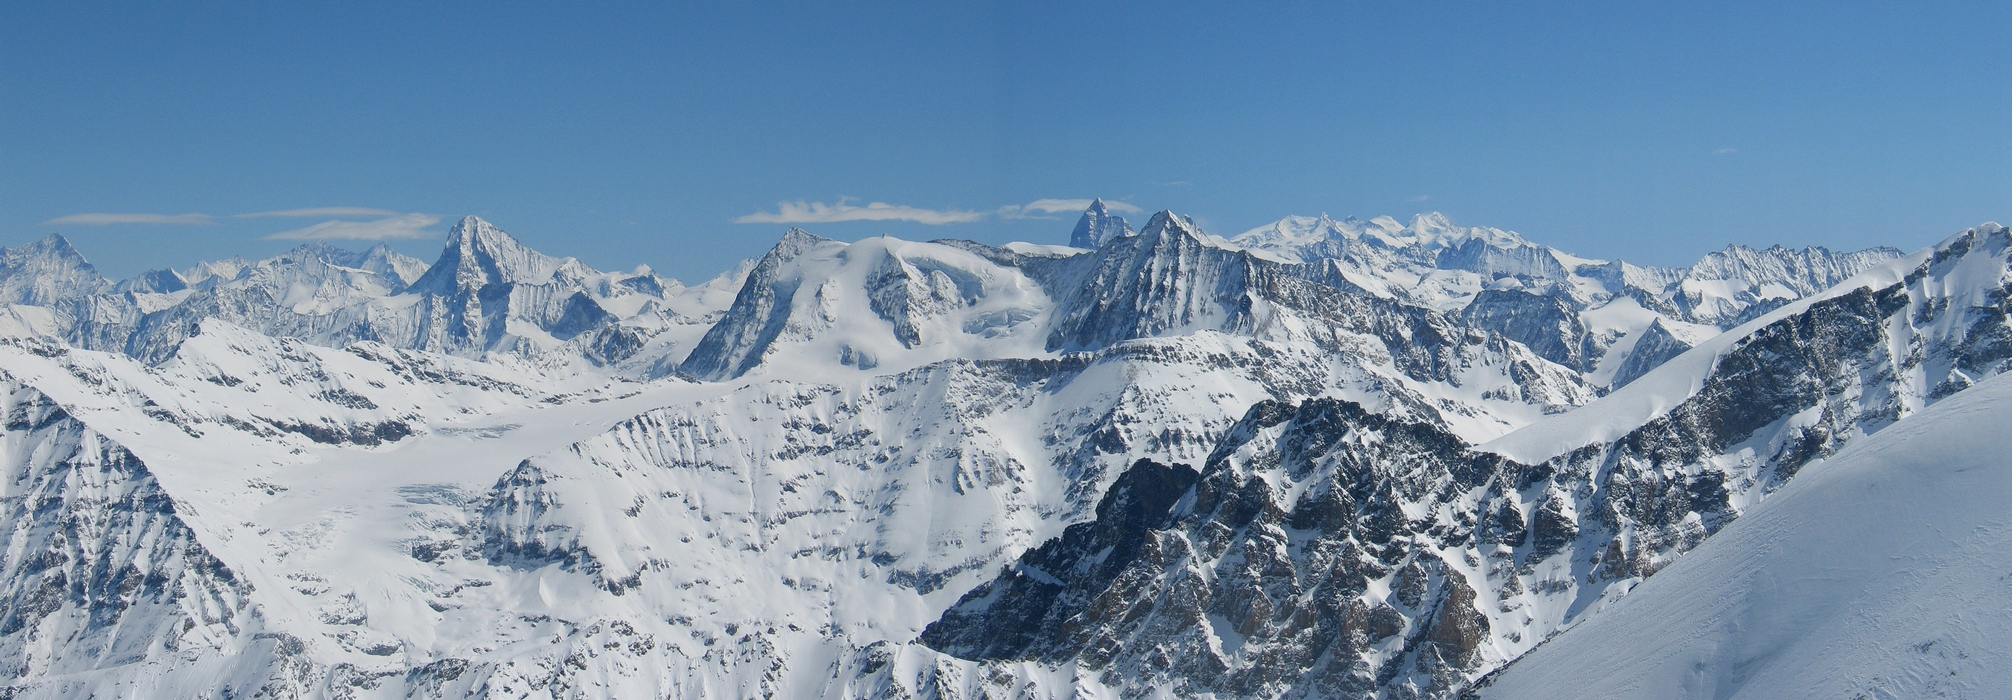 Petit Combin Walliser Alpen / Alpes valaisannes Switzerland panorama 03